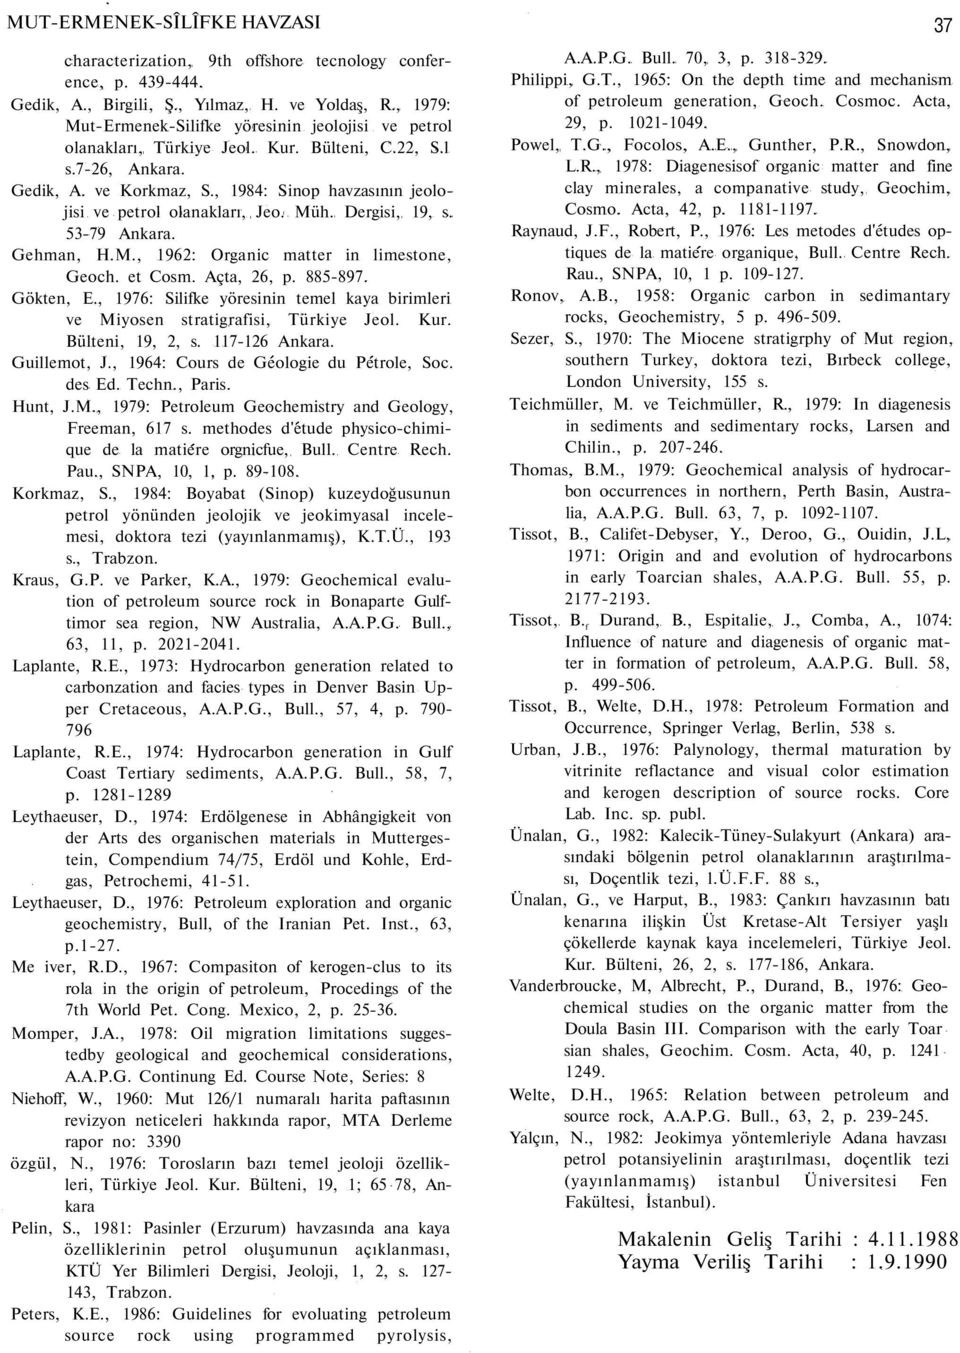 , 1984: Sinop havzasının jeolojisi ve petrol olanakları, Jeo. Müh. Dergisi, 19, s. 53-79 Ankara. Gehman, H.M., 1962: Organic matter in limestone, Geoch. et Cosm. Açta, 26, p. 885-897. Gökten, E.